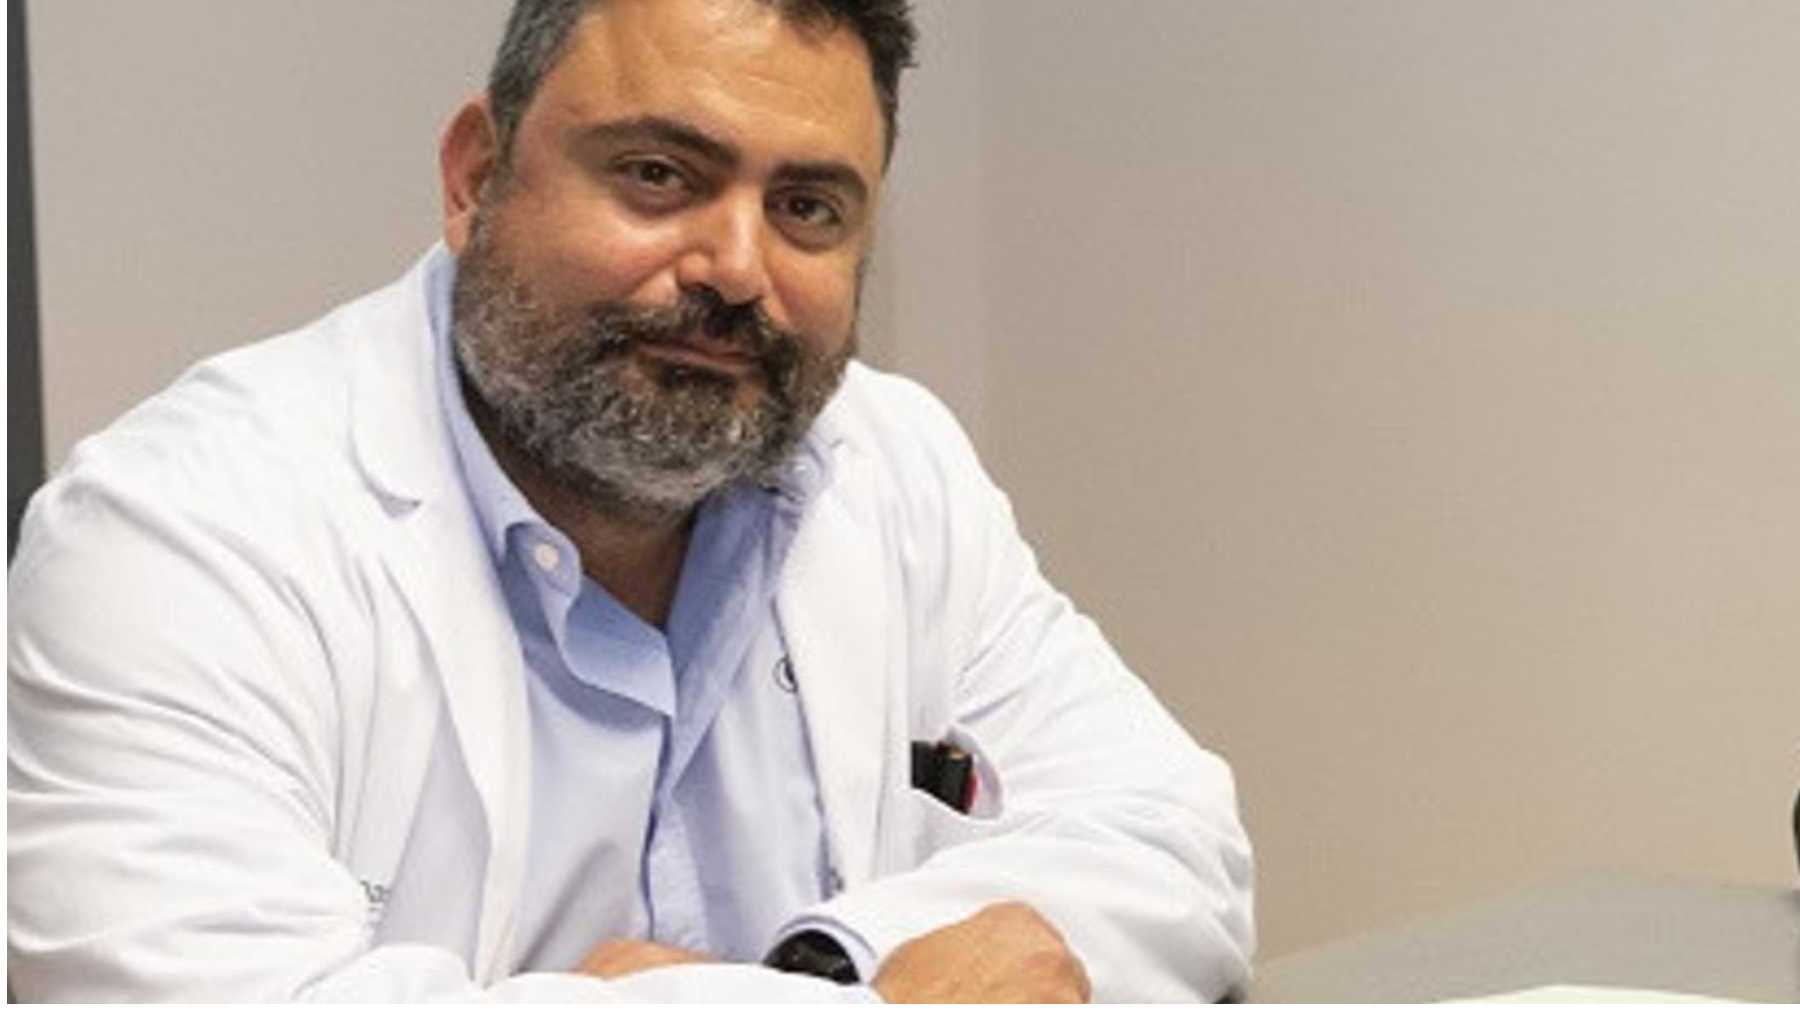 El doctor Antonio Oliver, jefe del Servicio de Microbiología del Hospital Son Espases.